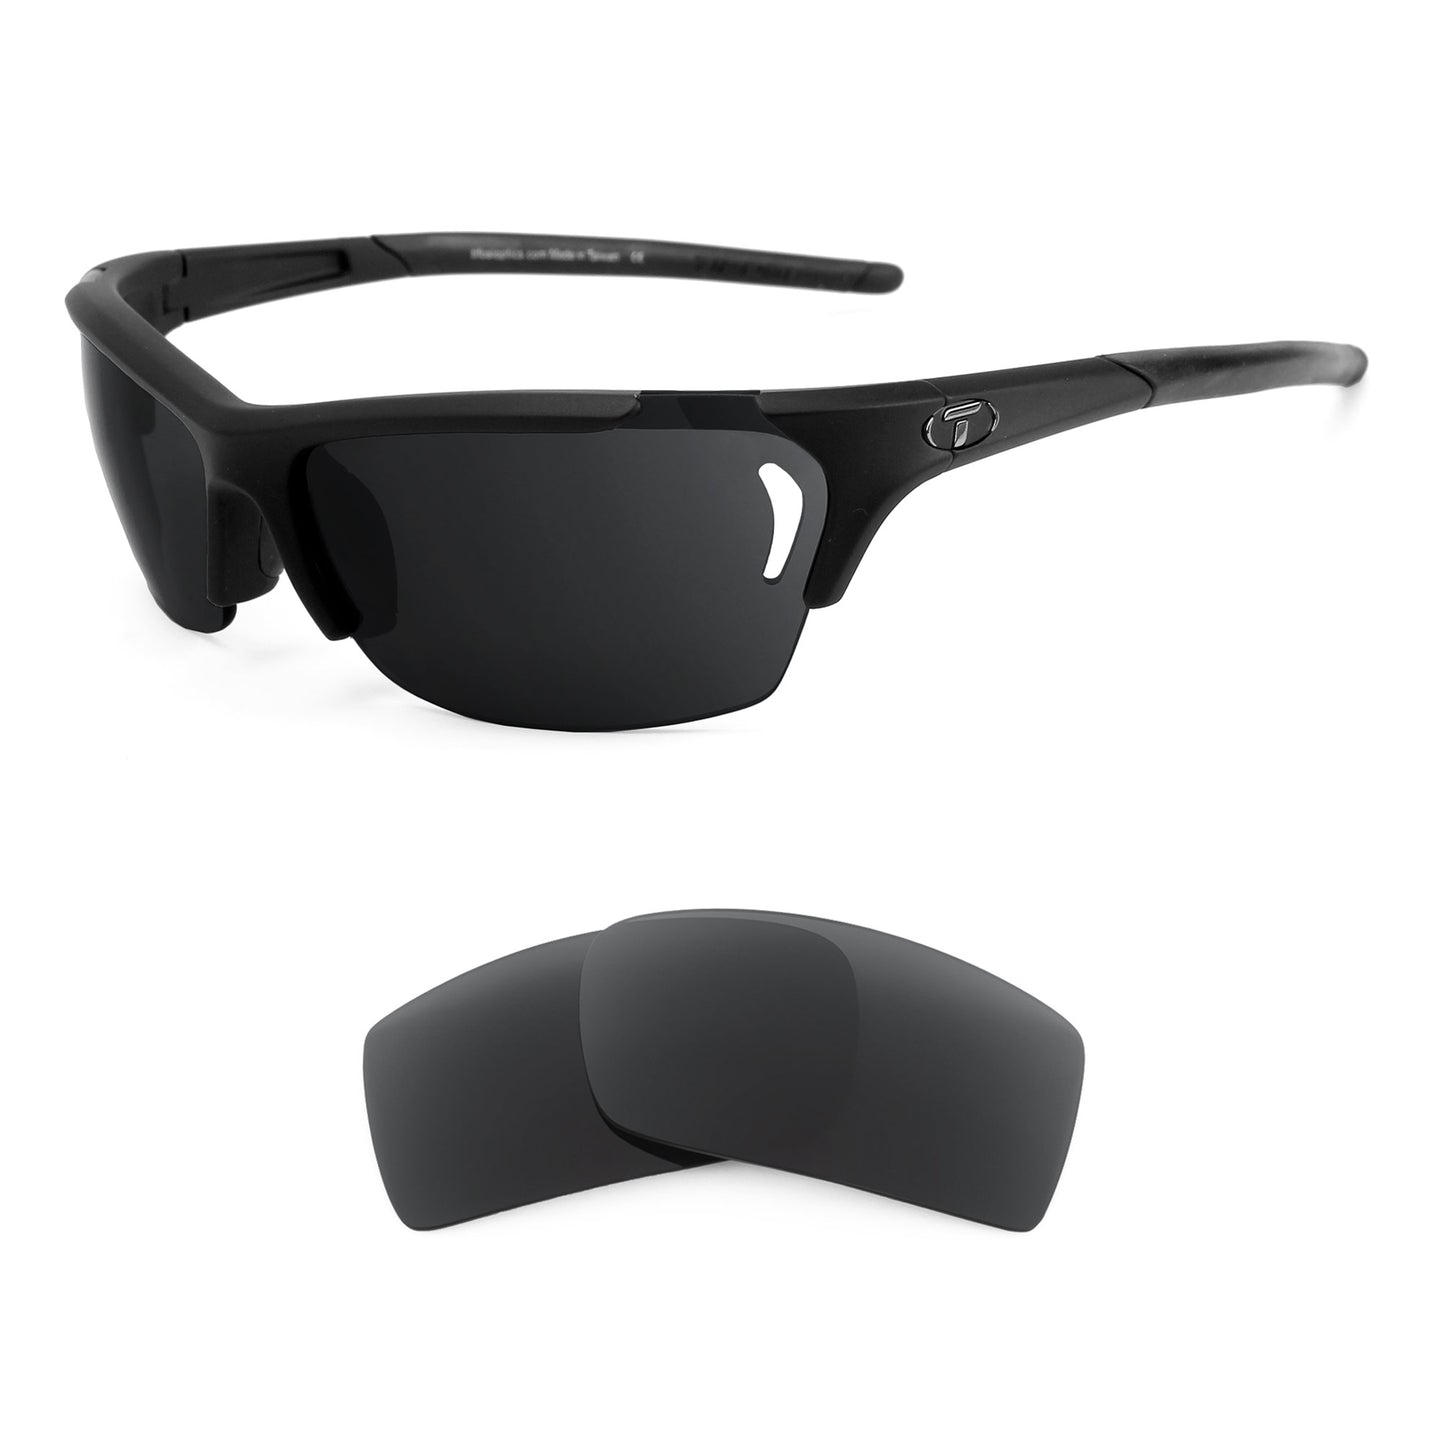 Tifosi Radius Vented sunglasses with replacement lenses